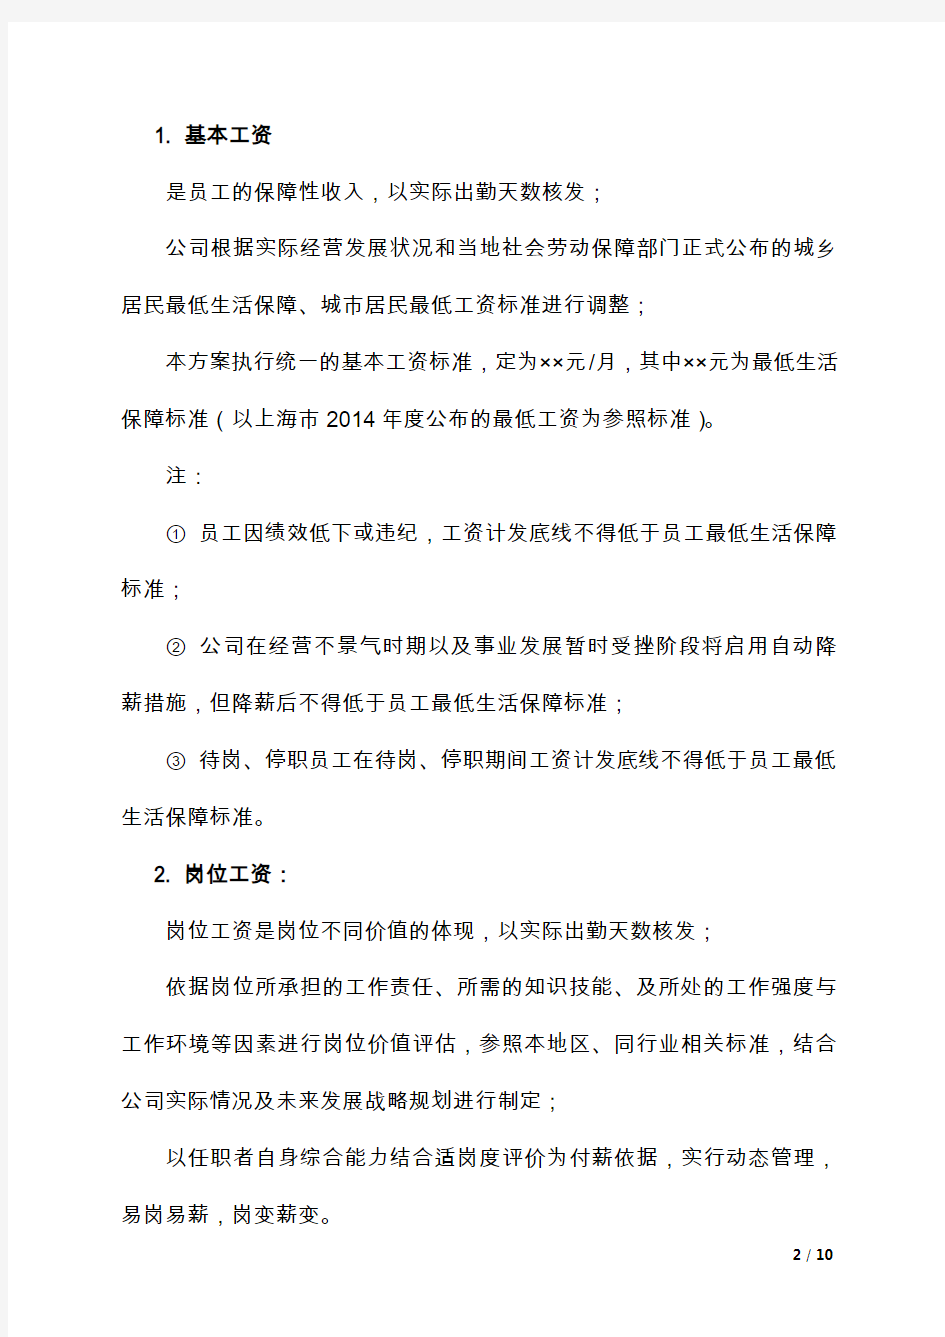 2015年上海公司薪酬管理办法